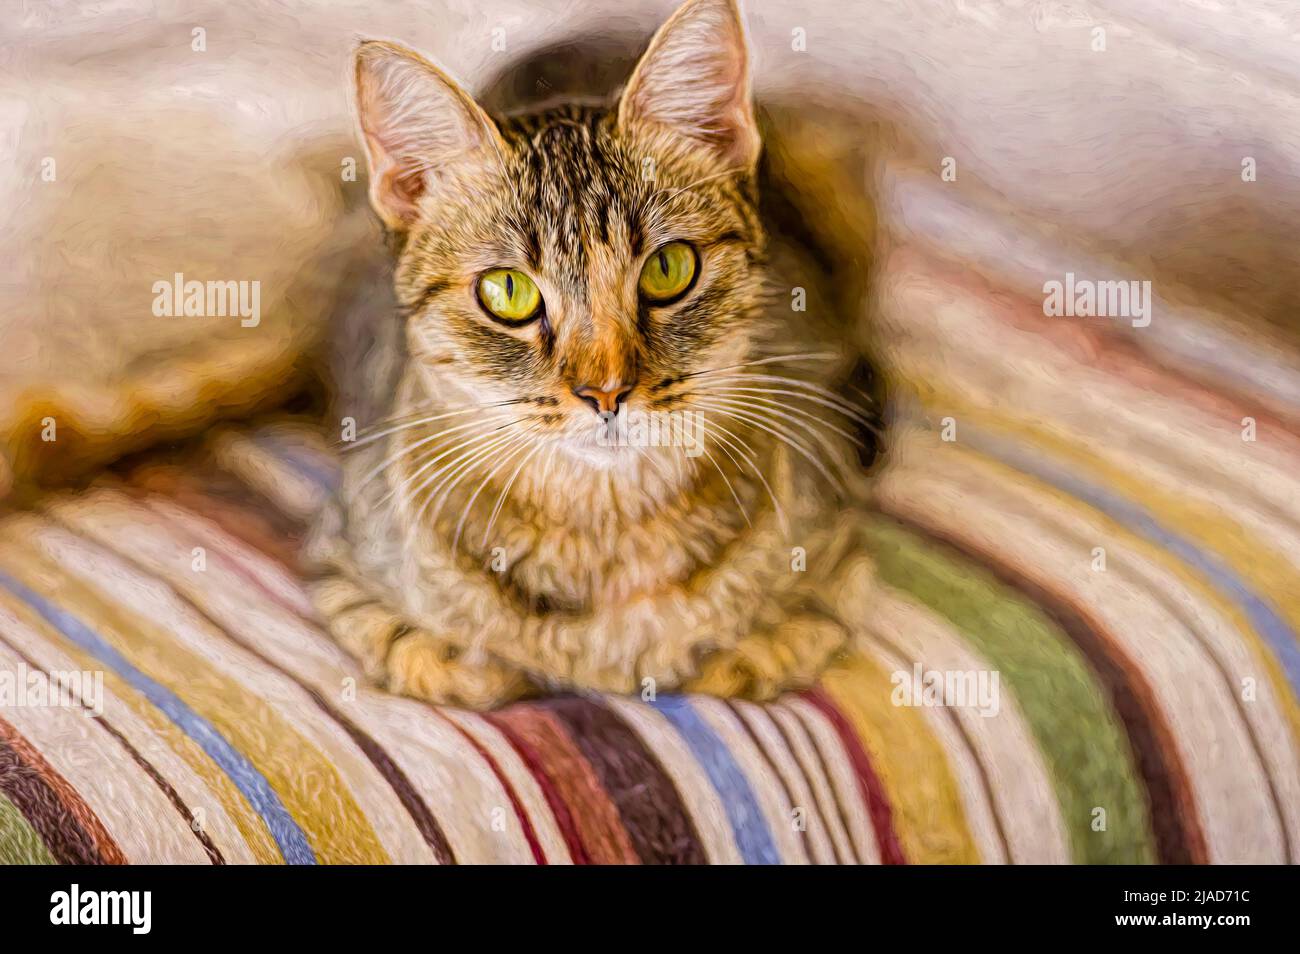 Un gato tabby descansa sobre una manta colorida en formato de pintura de ilustración Foto de stock